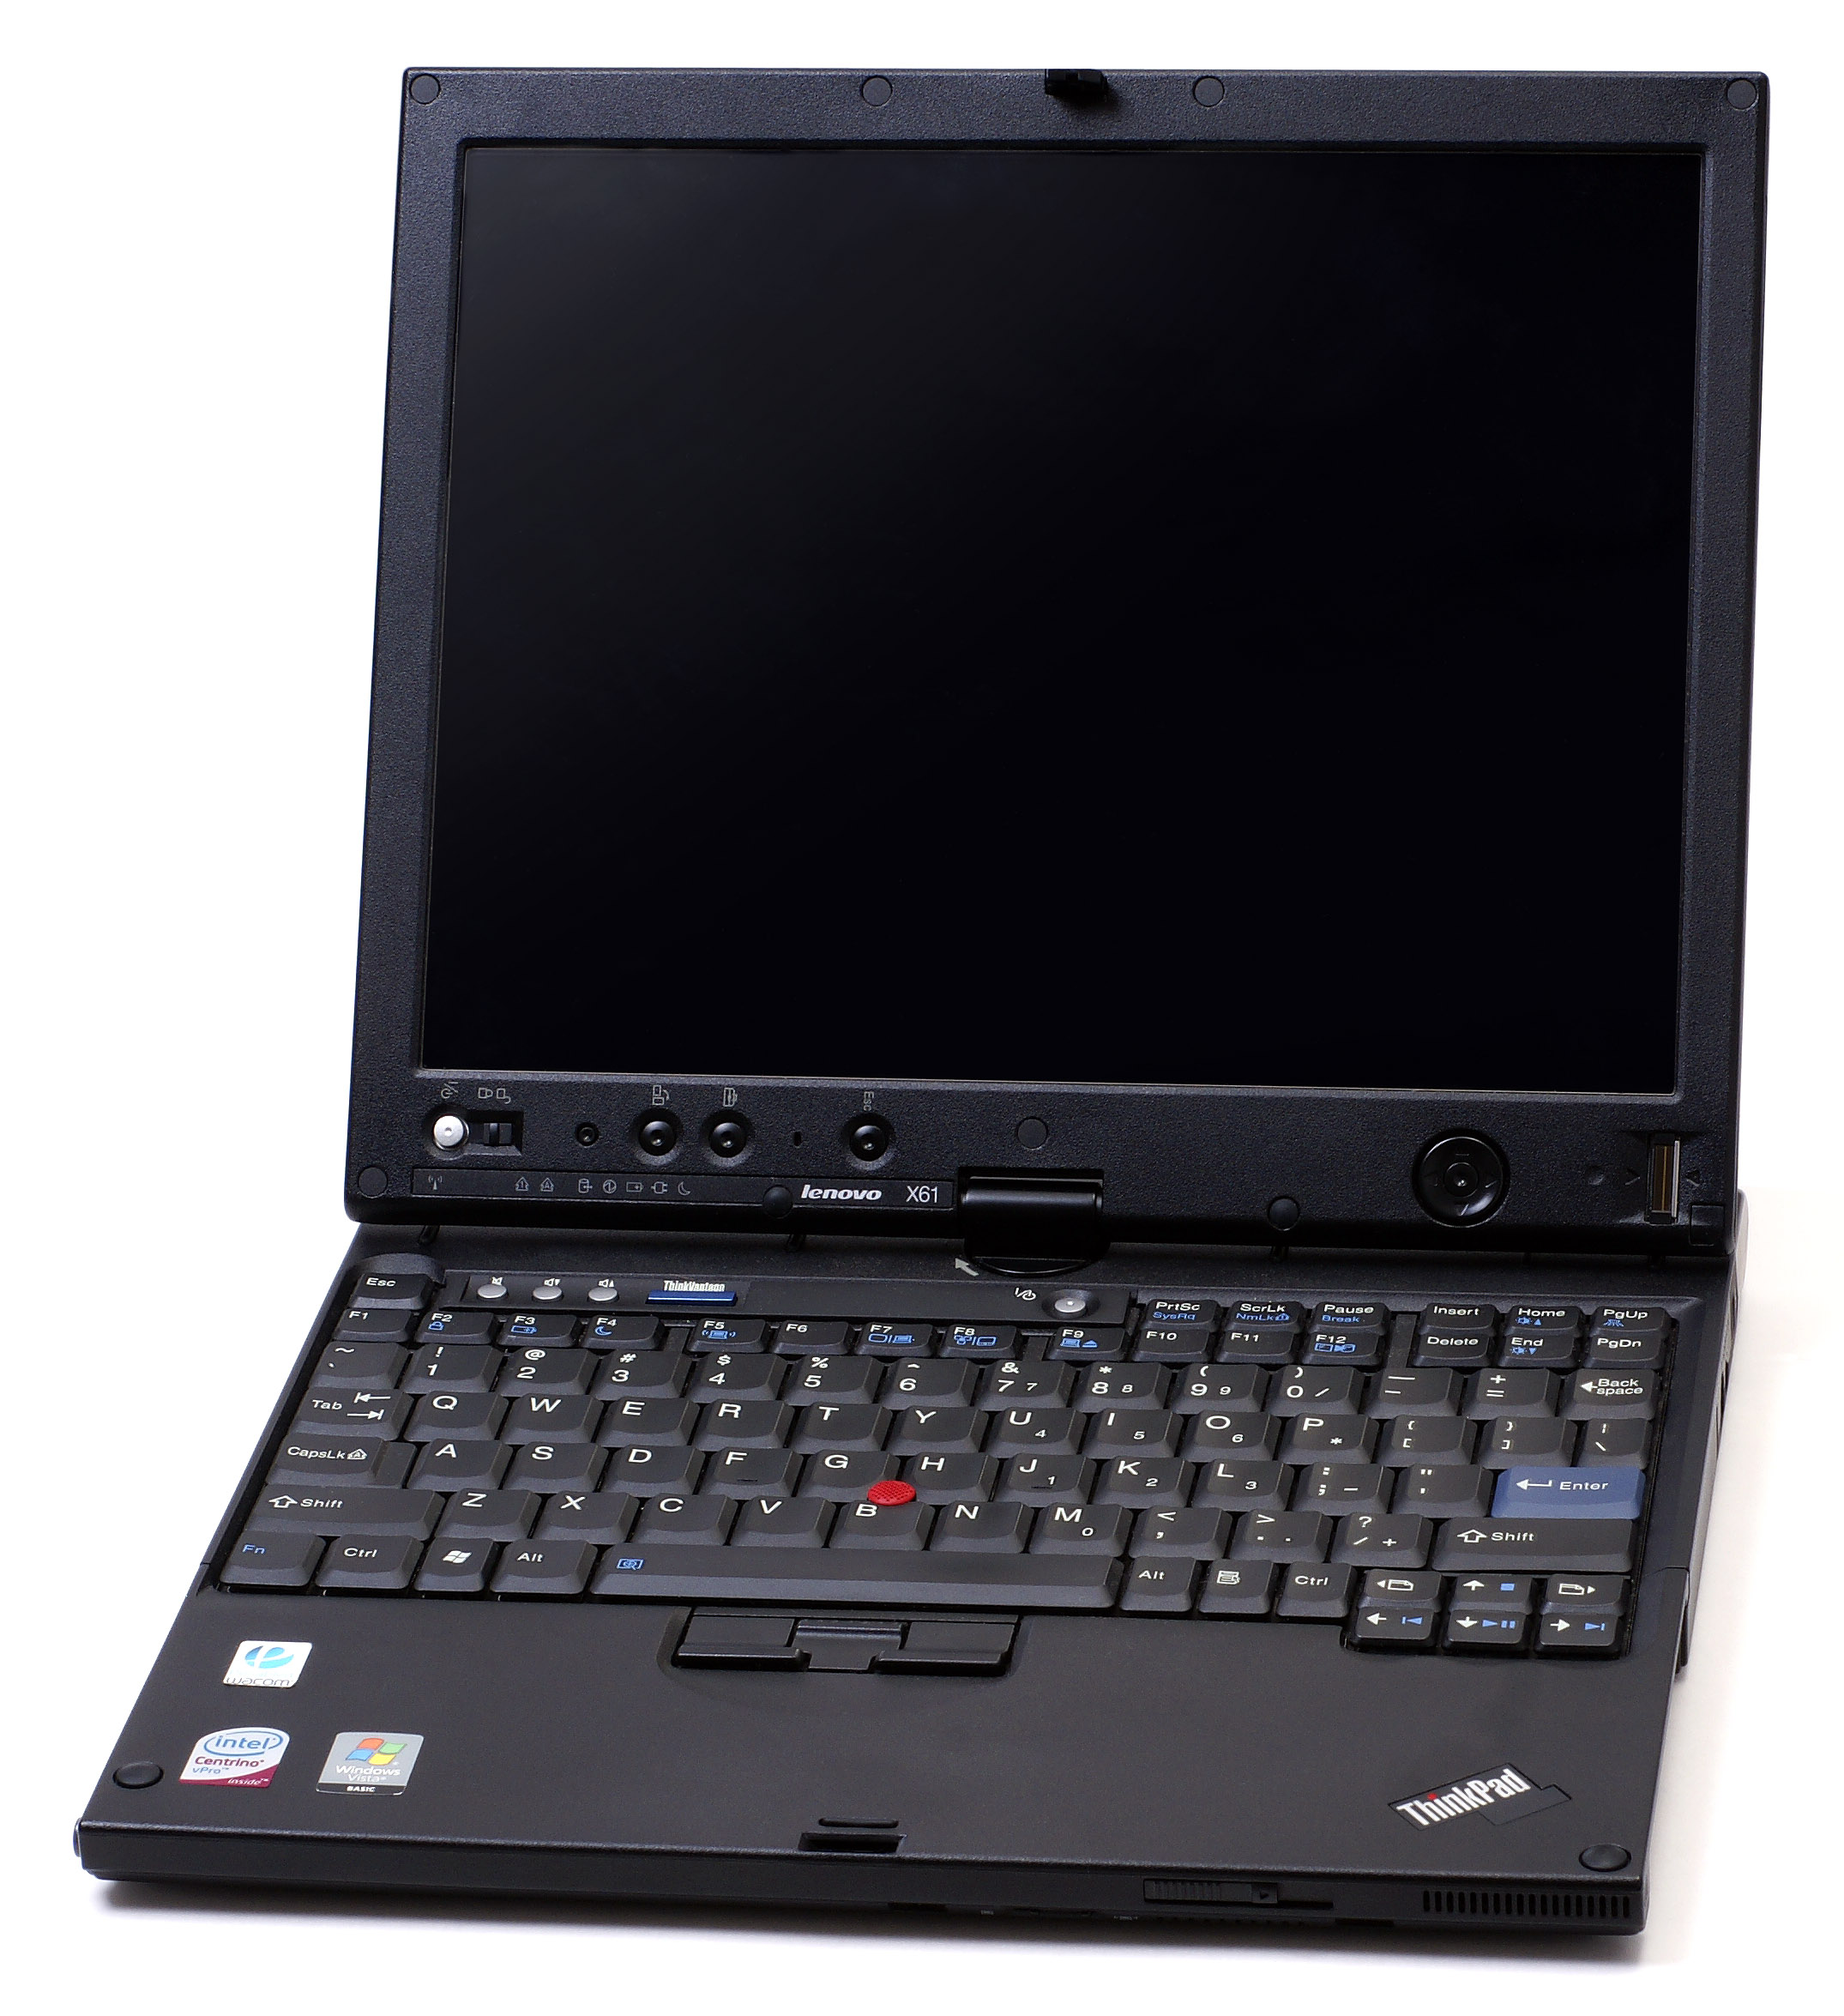 Файл:ThinkPad X61 Tablet.Jpg — Википедия